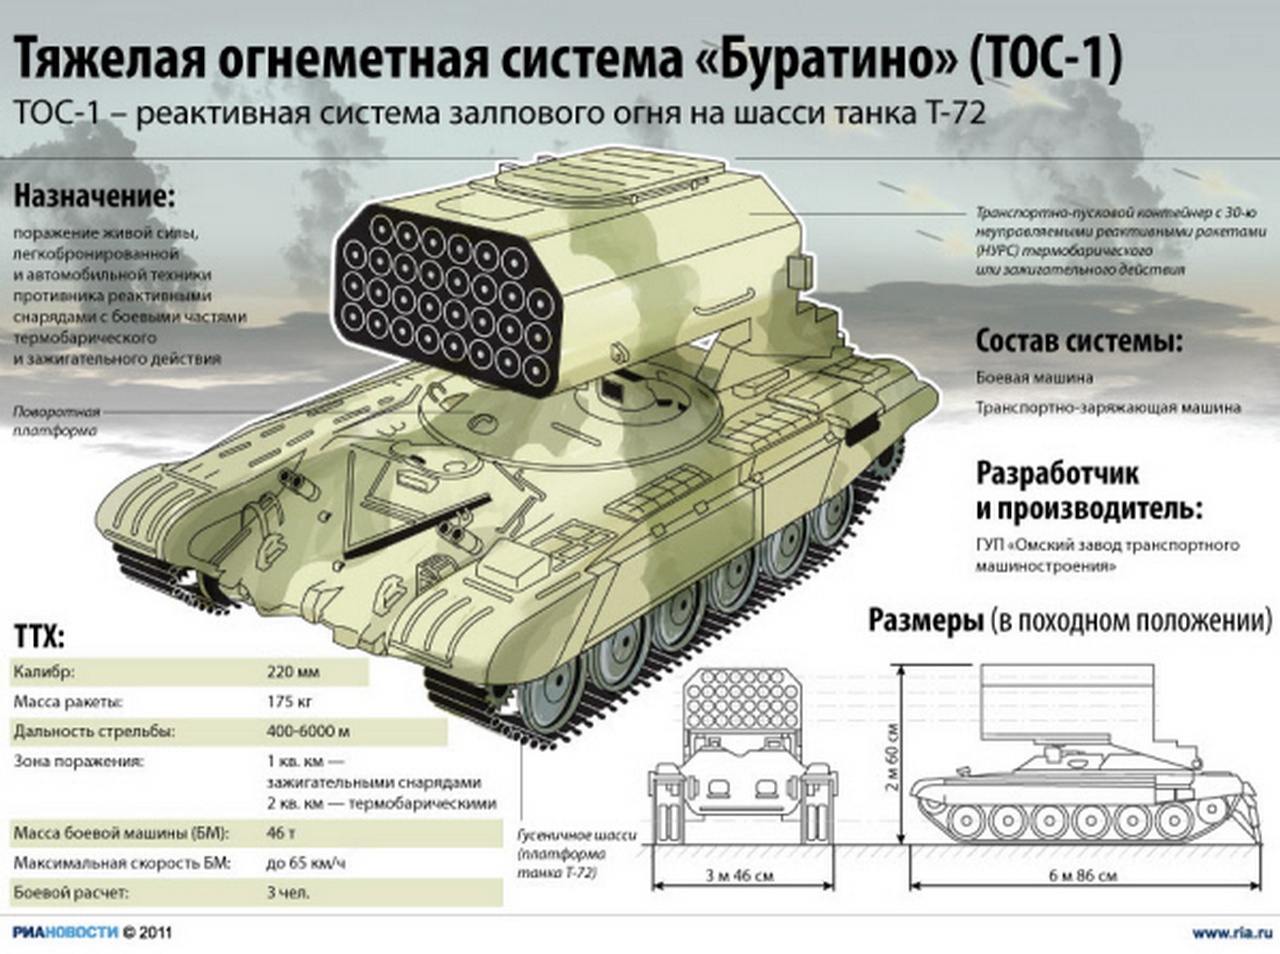 ТОС-1 (проект «Буратино») - реактивная система залпового огня на шасси танка Т-72.